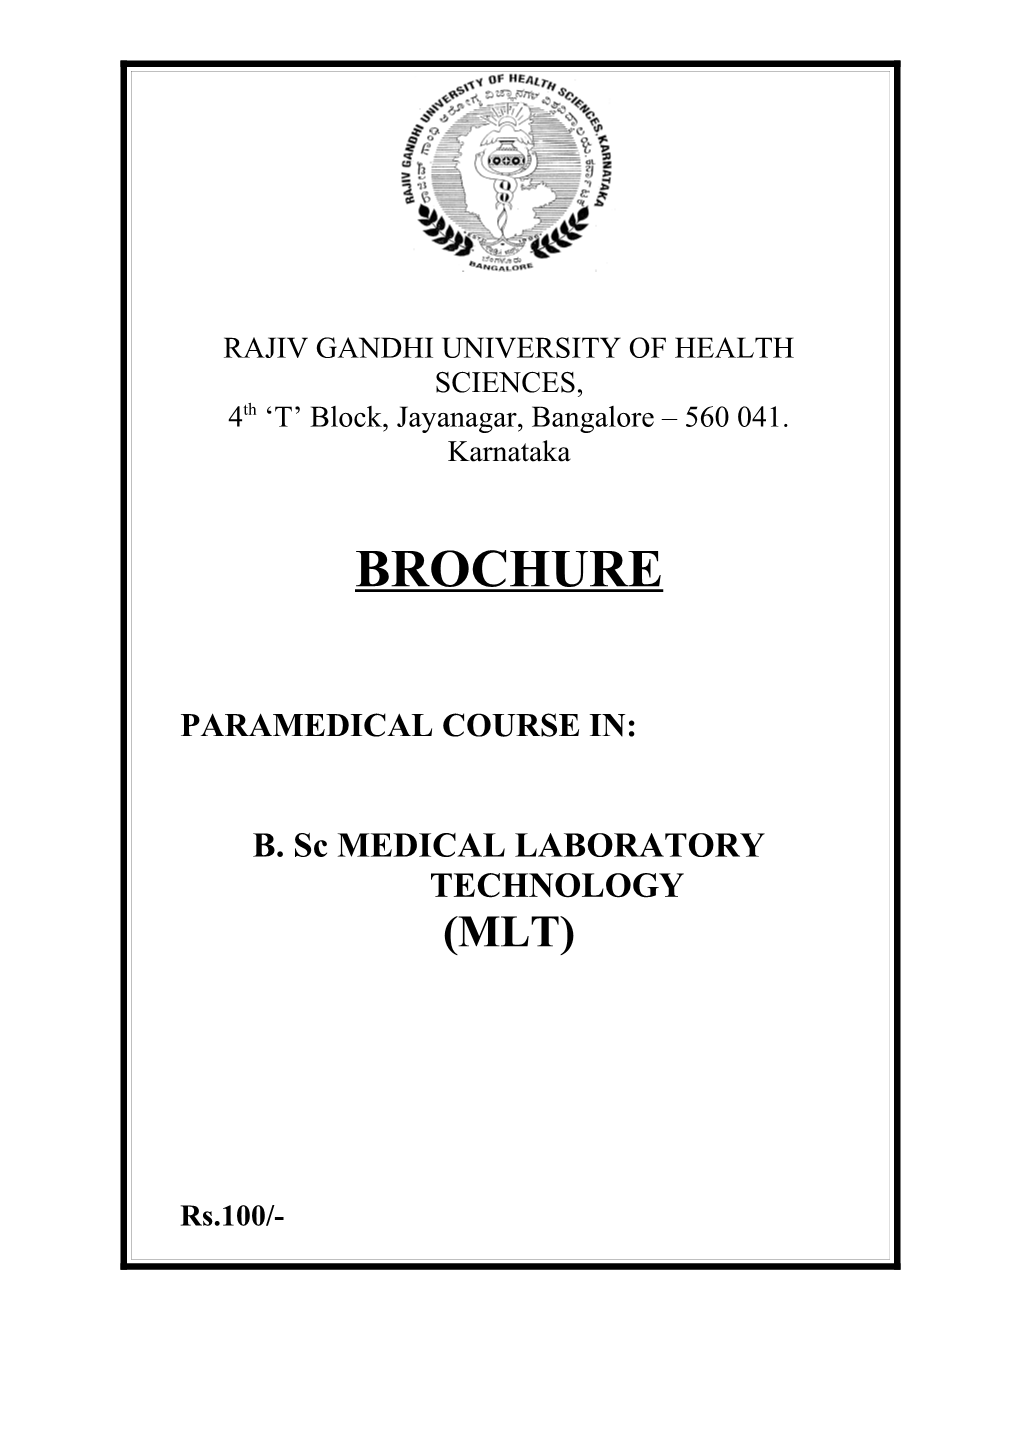 Minimum Criteria for Conducting Paramedical Courses